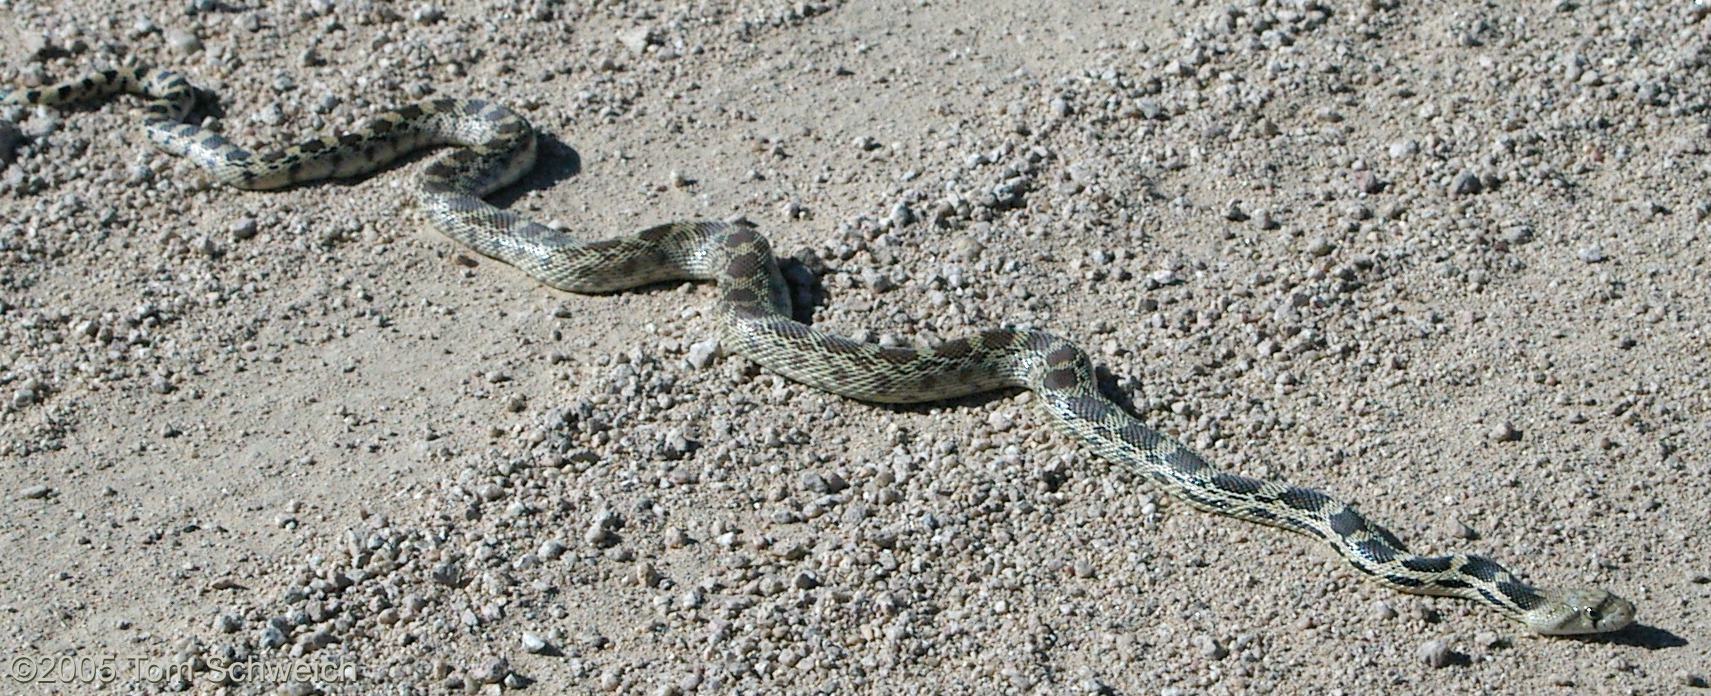 Reptilia Pituophis catenifer, Gopher Snake, Mojave National Preserve, San Bernardino County, California